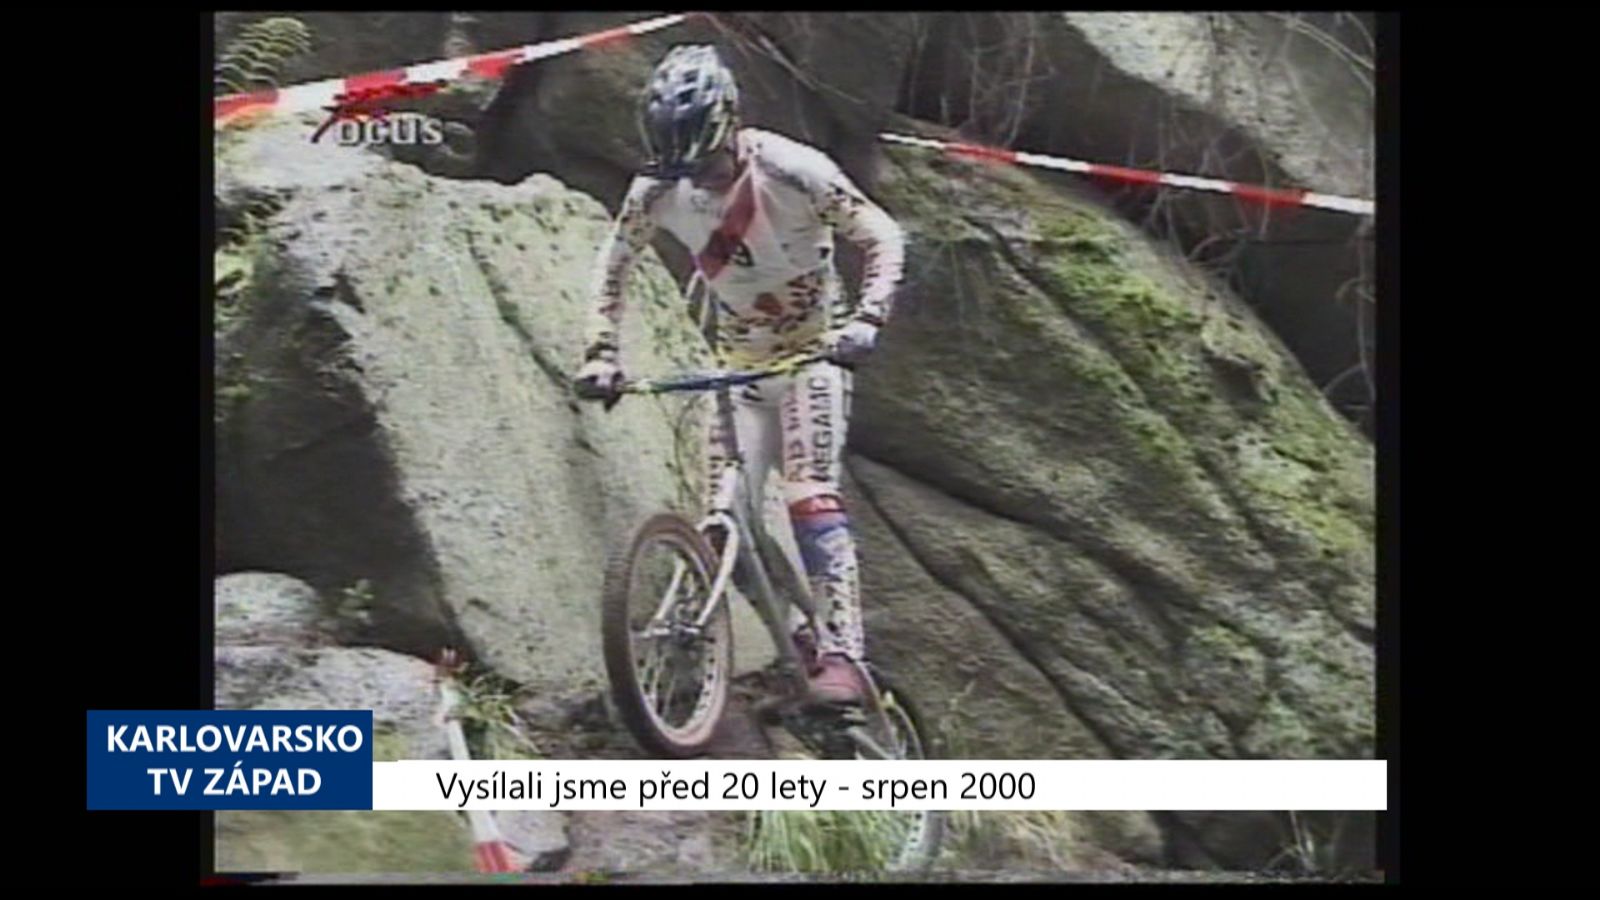 2000 – Březová: Mistrovství v cyklotrialu ovládli Španělé (TV Západ)